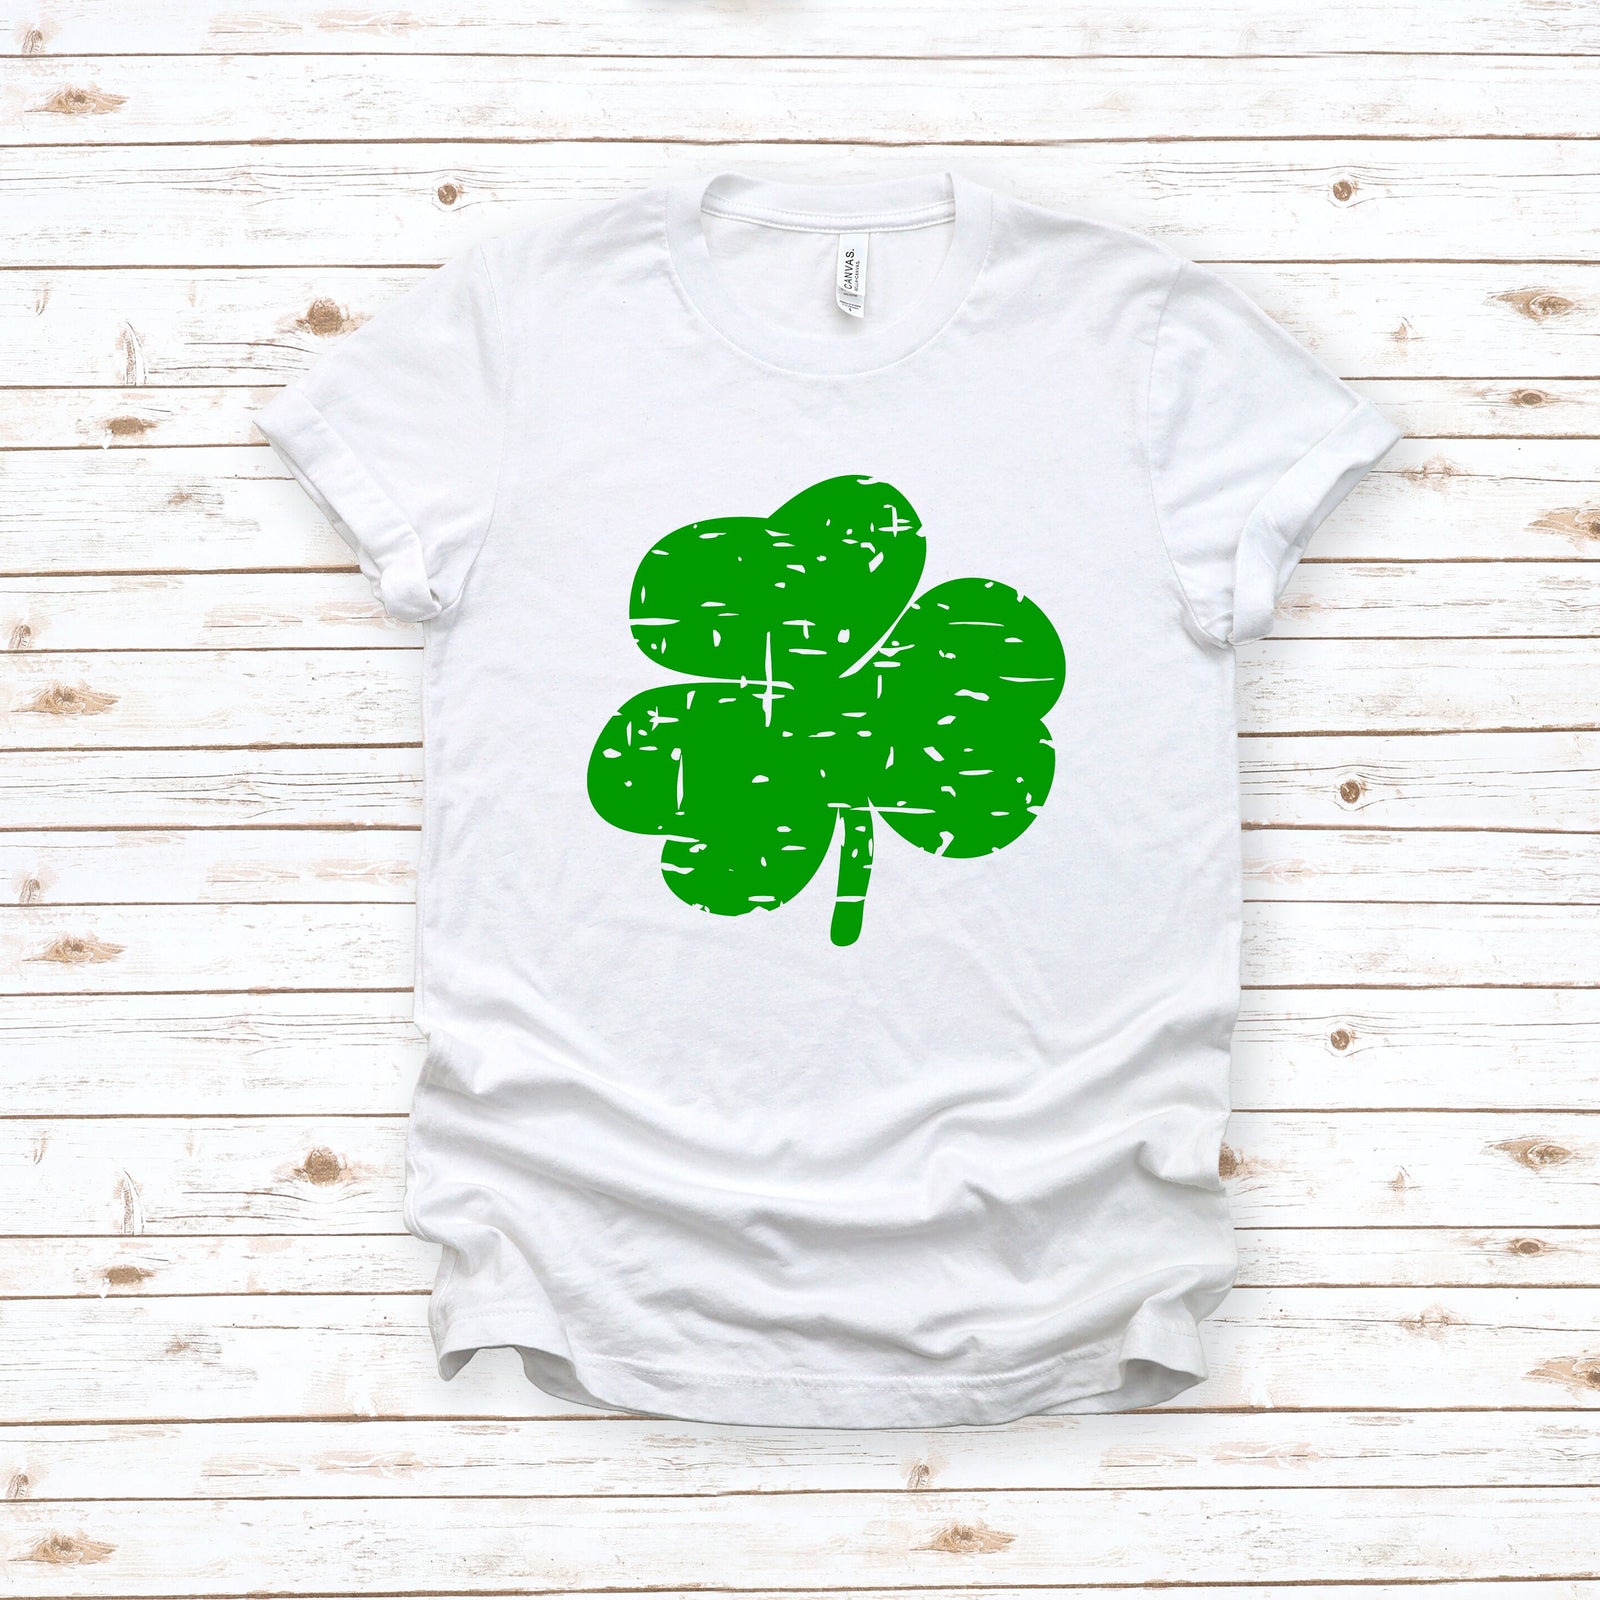 Retro Faded Shamrock Adult T Shirt - St. Patrick's Day Shirt - Lucky - Green - Teacher School Shirt